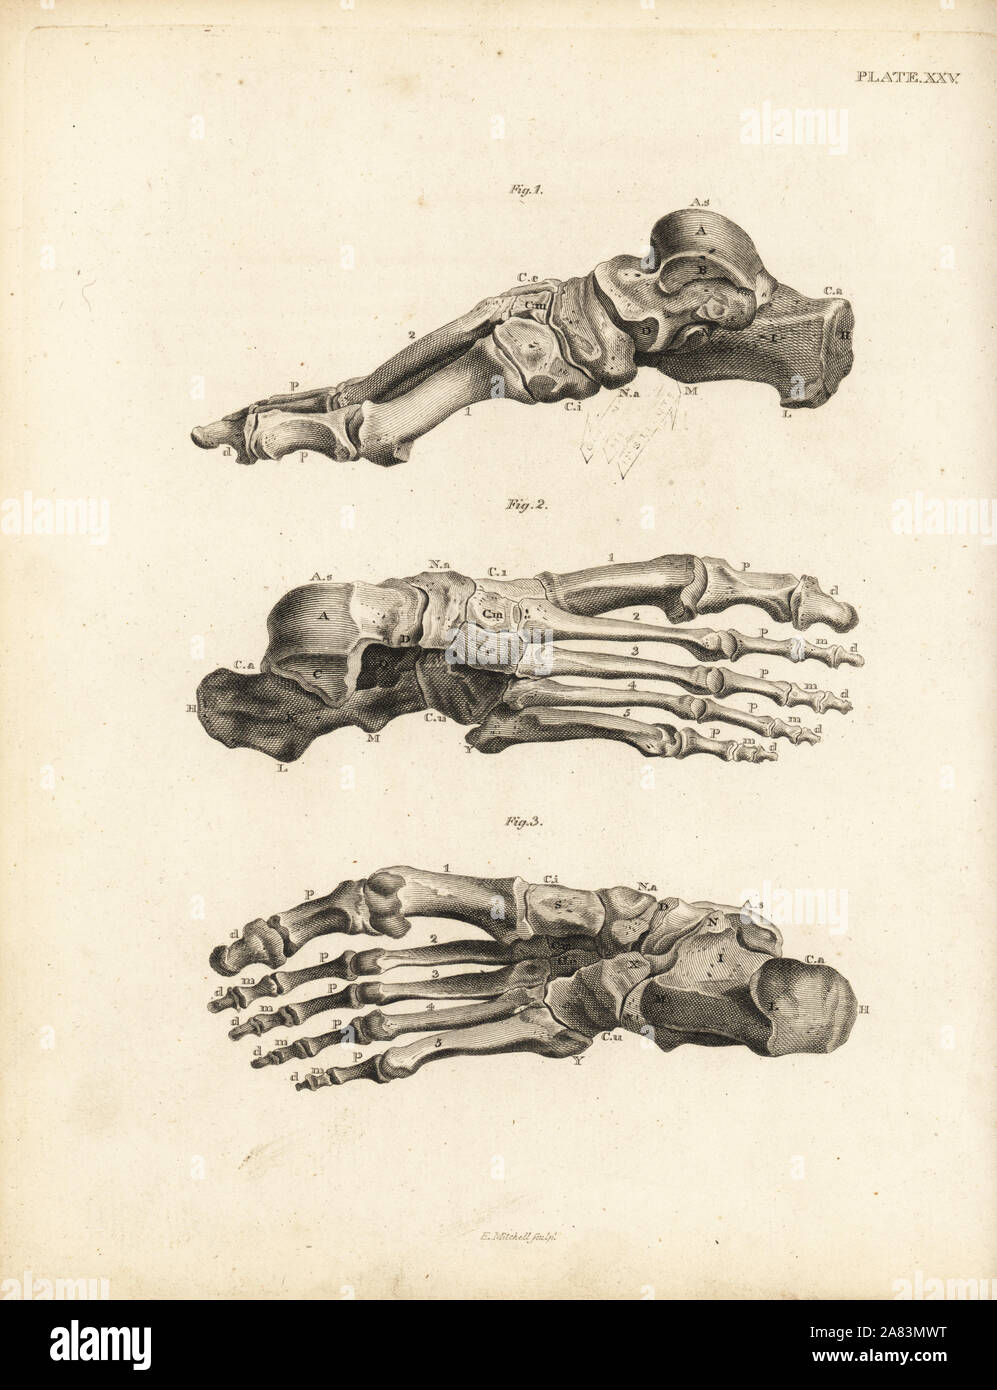 Blick auf den Knochen im menschlichen Fuß vom Knöchel bis zu den Zehen. Kupferstich von Edward Mitchell nach einem anatomischen Illustration von jean-joseph Sue von John Barclay ist eine Reihe von Stichen des menschlichen Skeletts, MacLachlan und Stewart, Edinburgh, 1824. Stockfoto